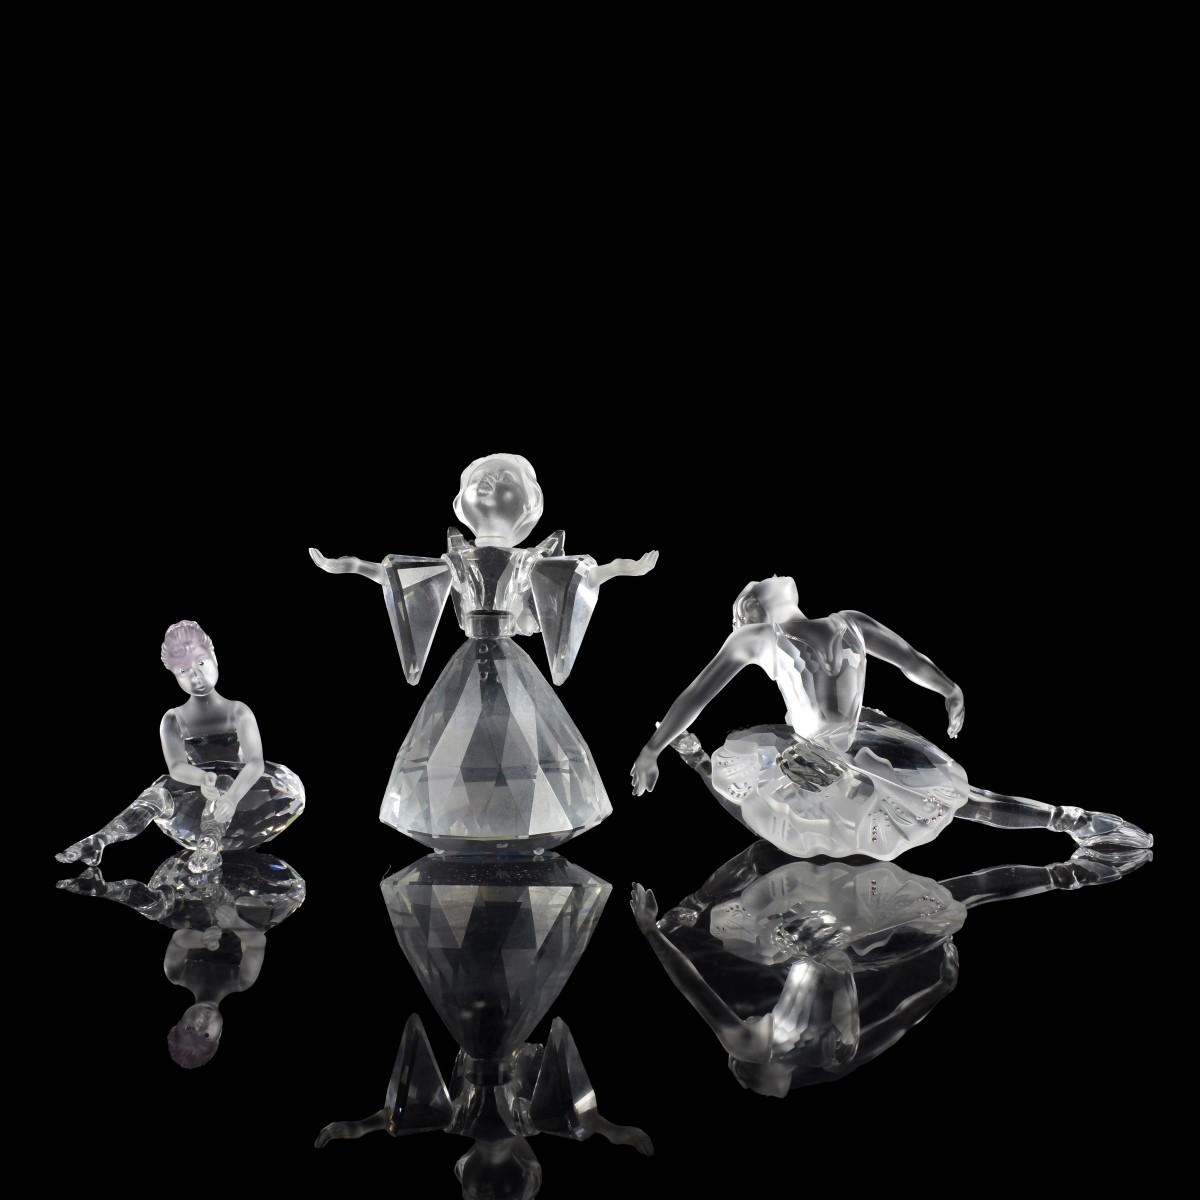 3 Swavorski Figurines